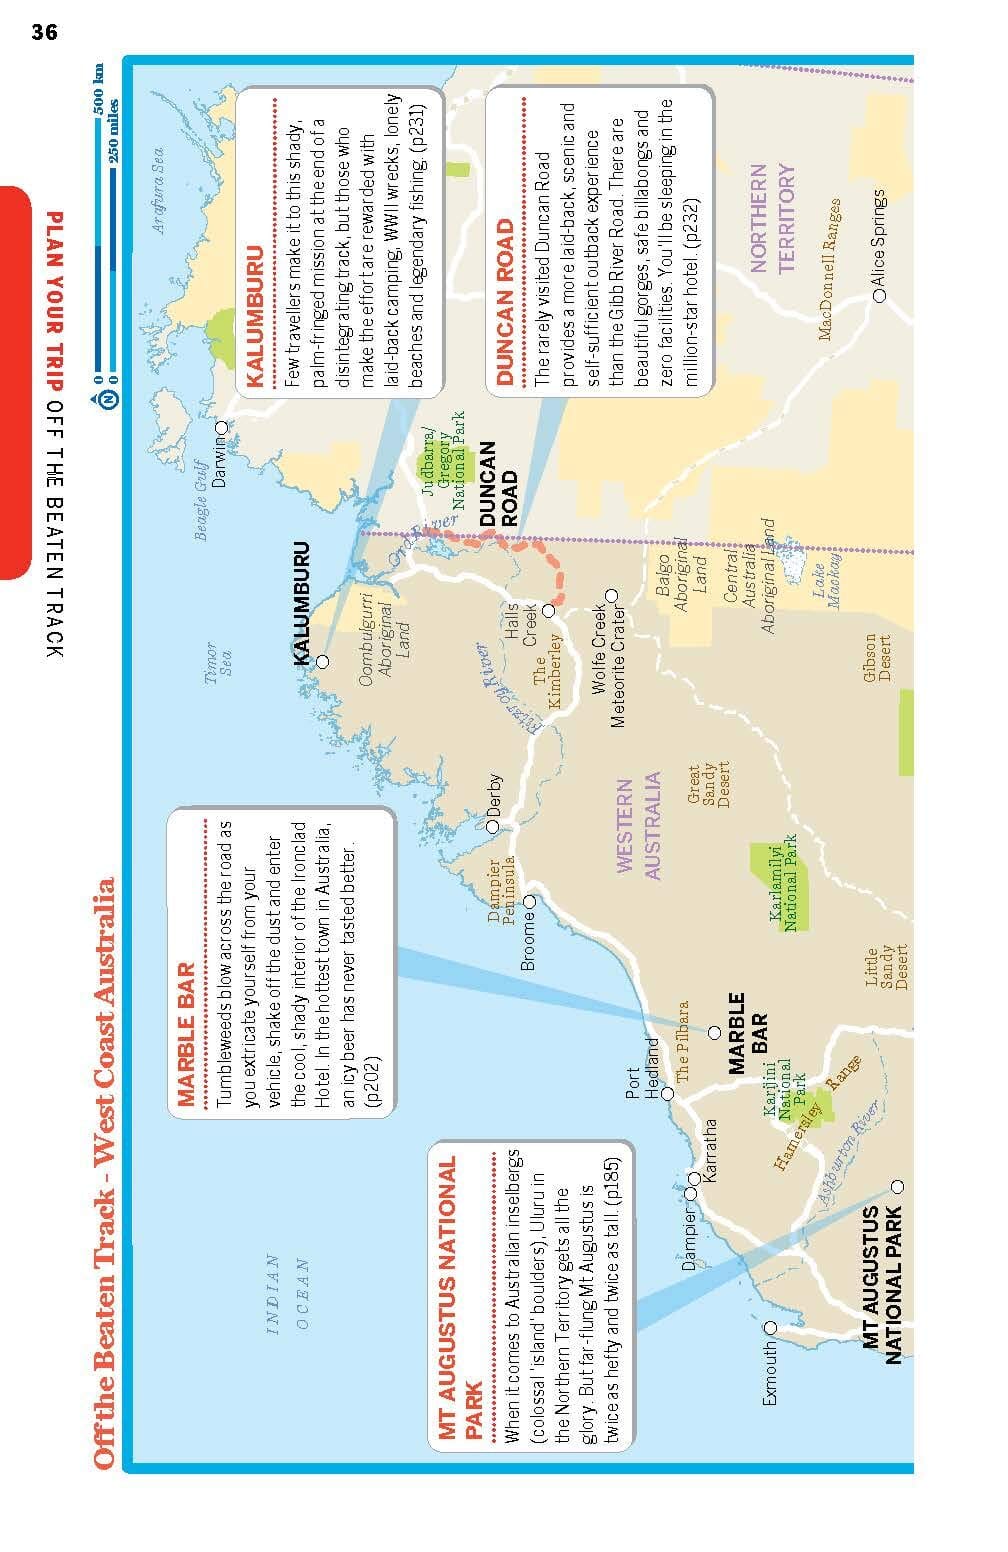 Guide de voyage (en anglais) - West Coast Australia | Lonely Planet guide de voyage Lonely Planet EN 